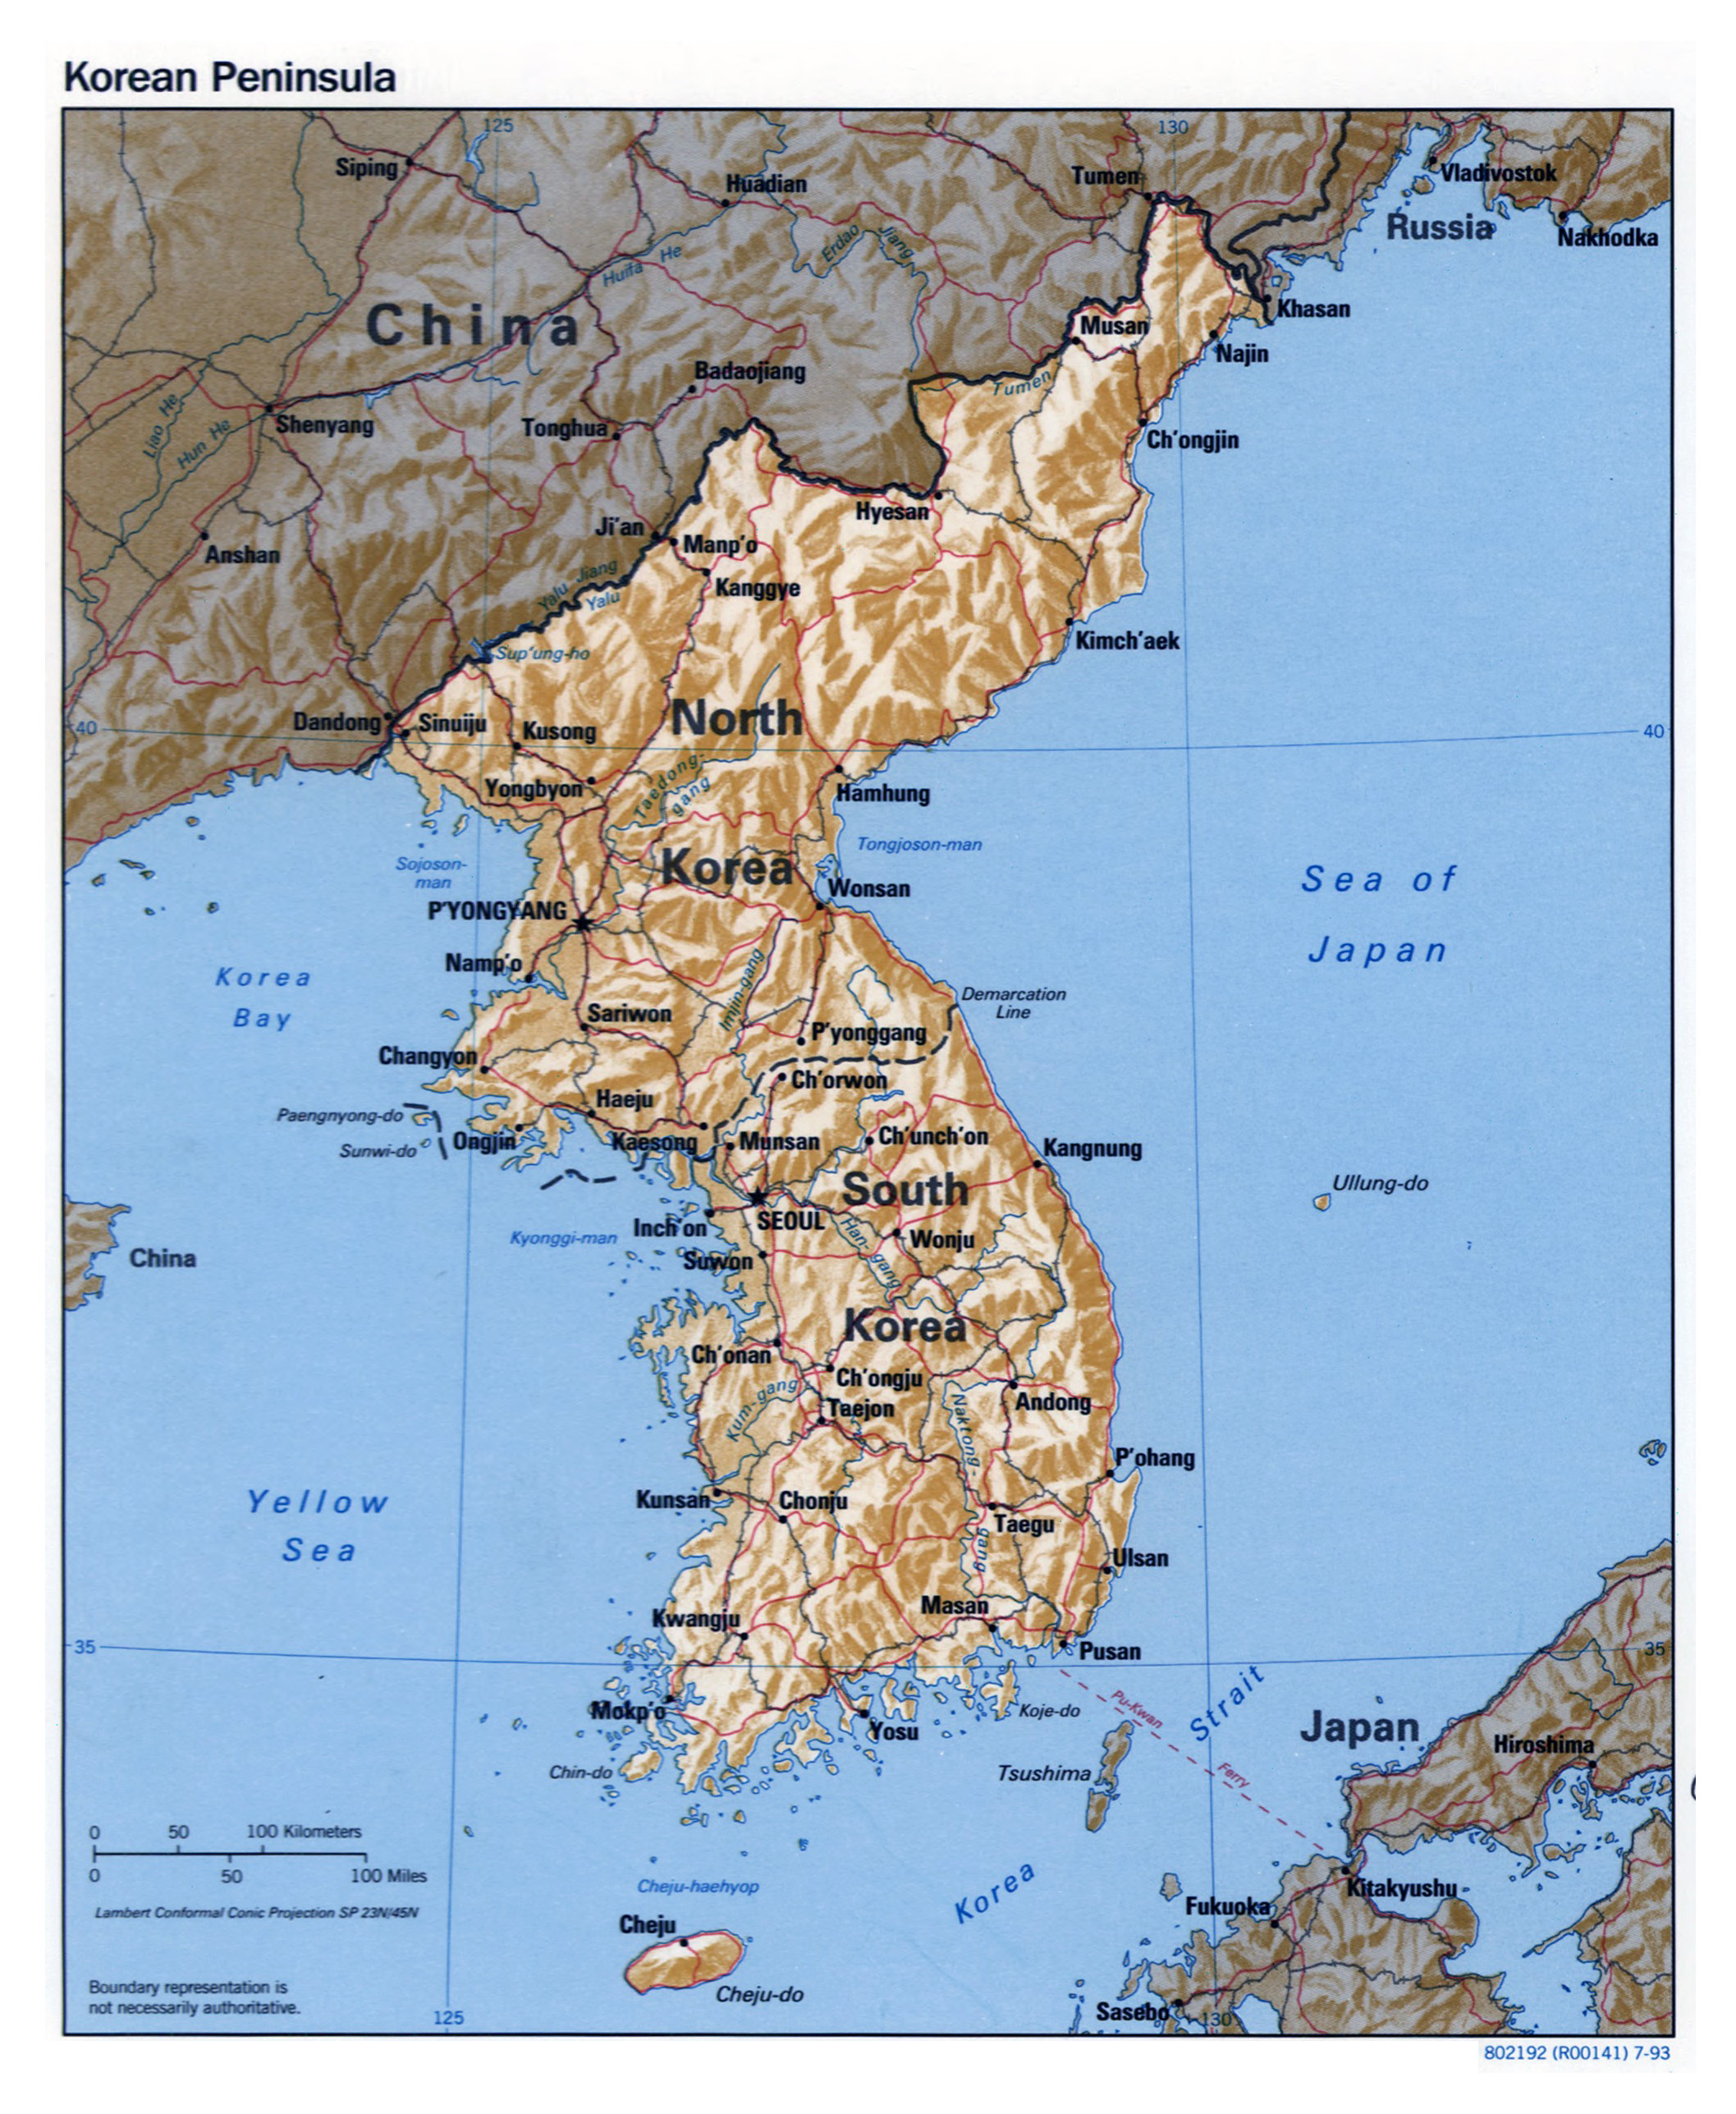 Grande Detallado Mapa Politico De La Peninsula De Corea Con Relieve Carreteras Ferrocarriles Y Principales Ciudades 1993 